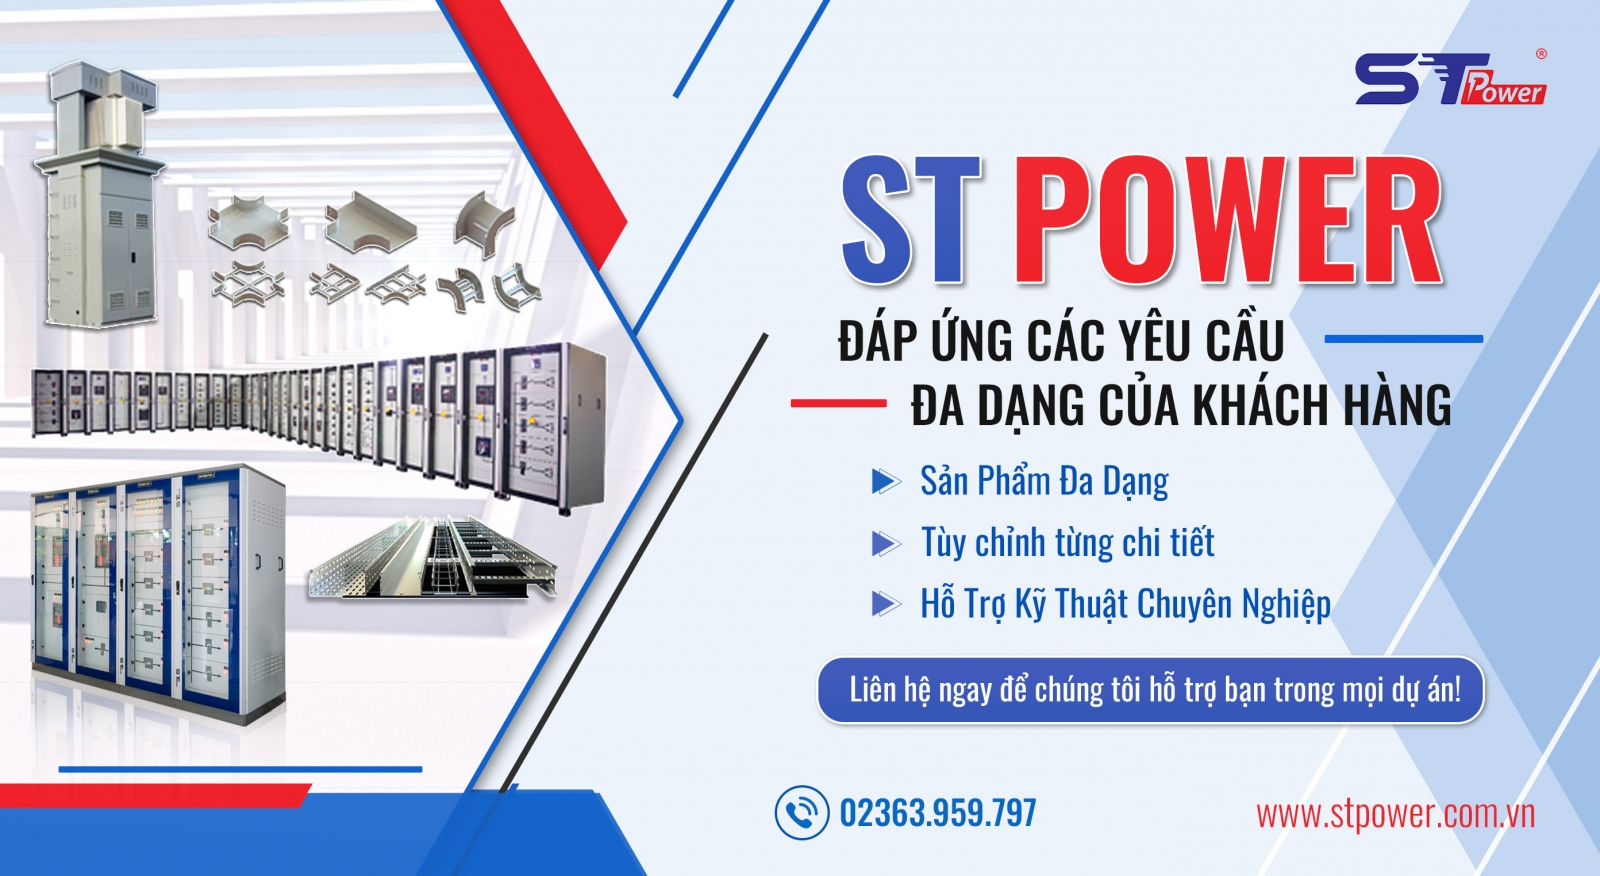 ST Power đáp ứng mọi nhu cầu của khách hàng